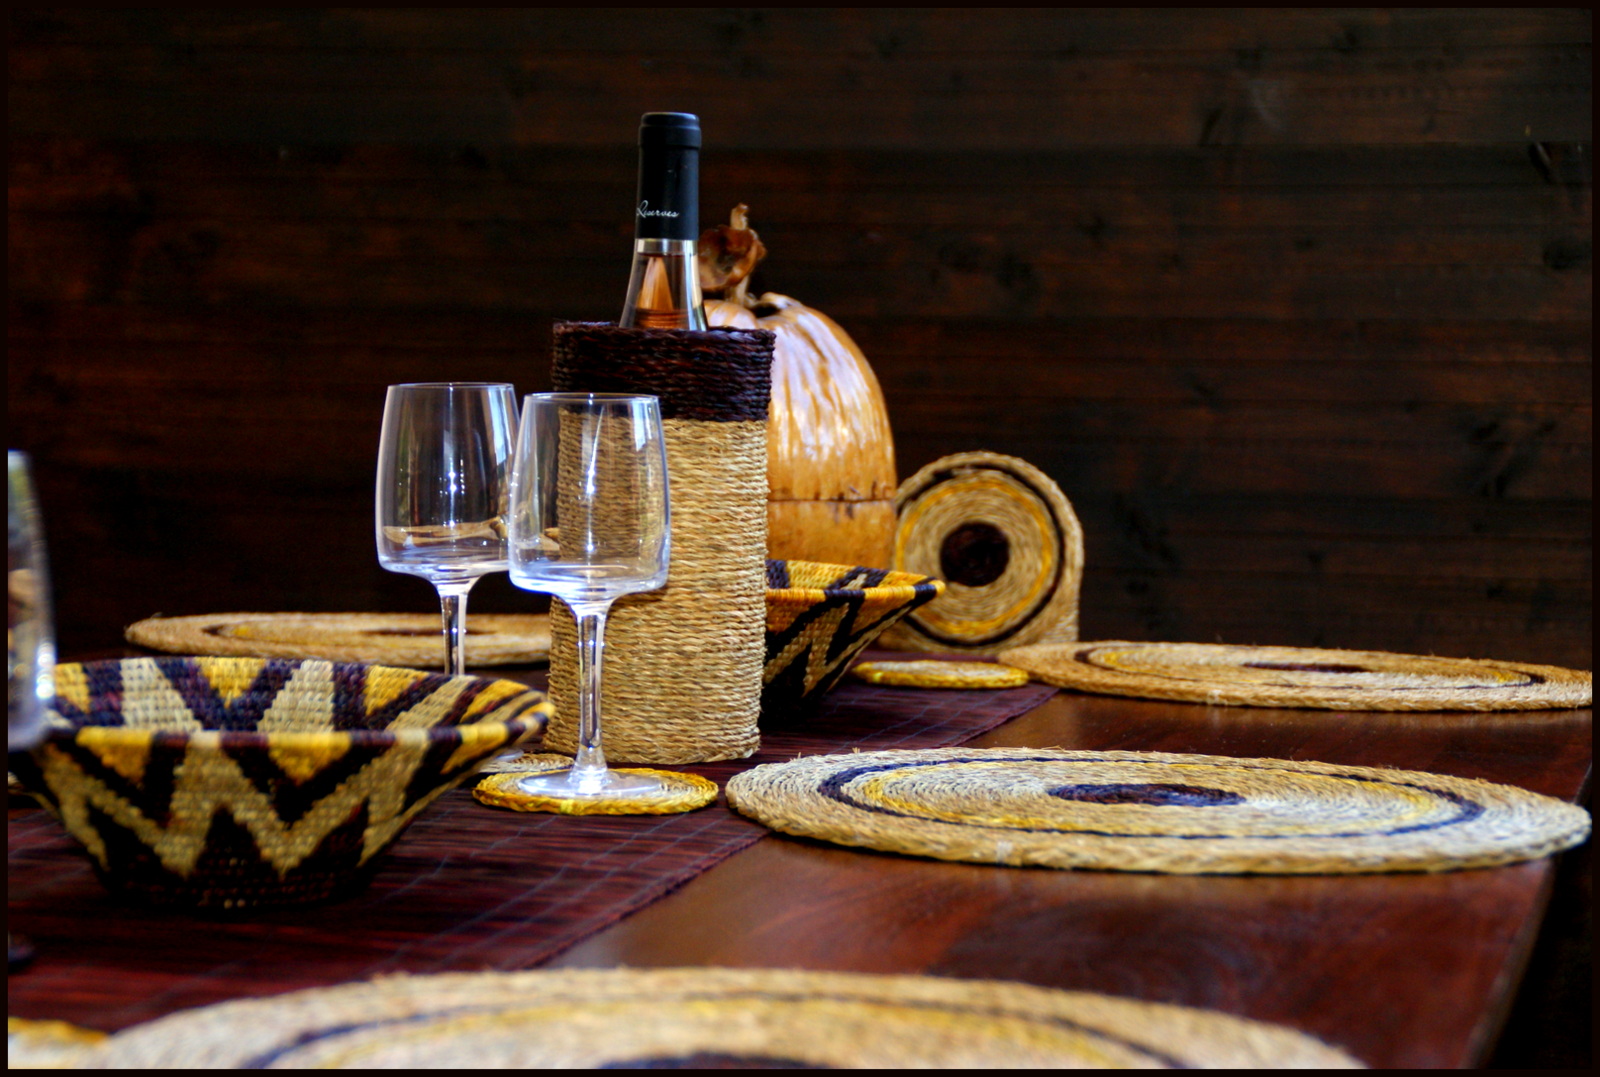 table décorée avec des sets ronds, panière, verres et porte-bouteille